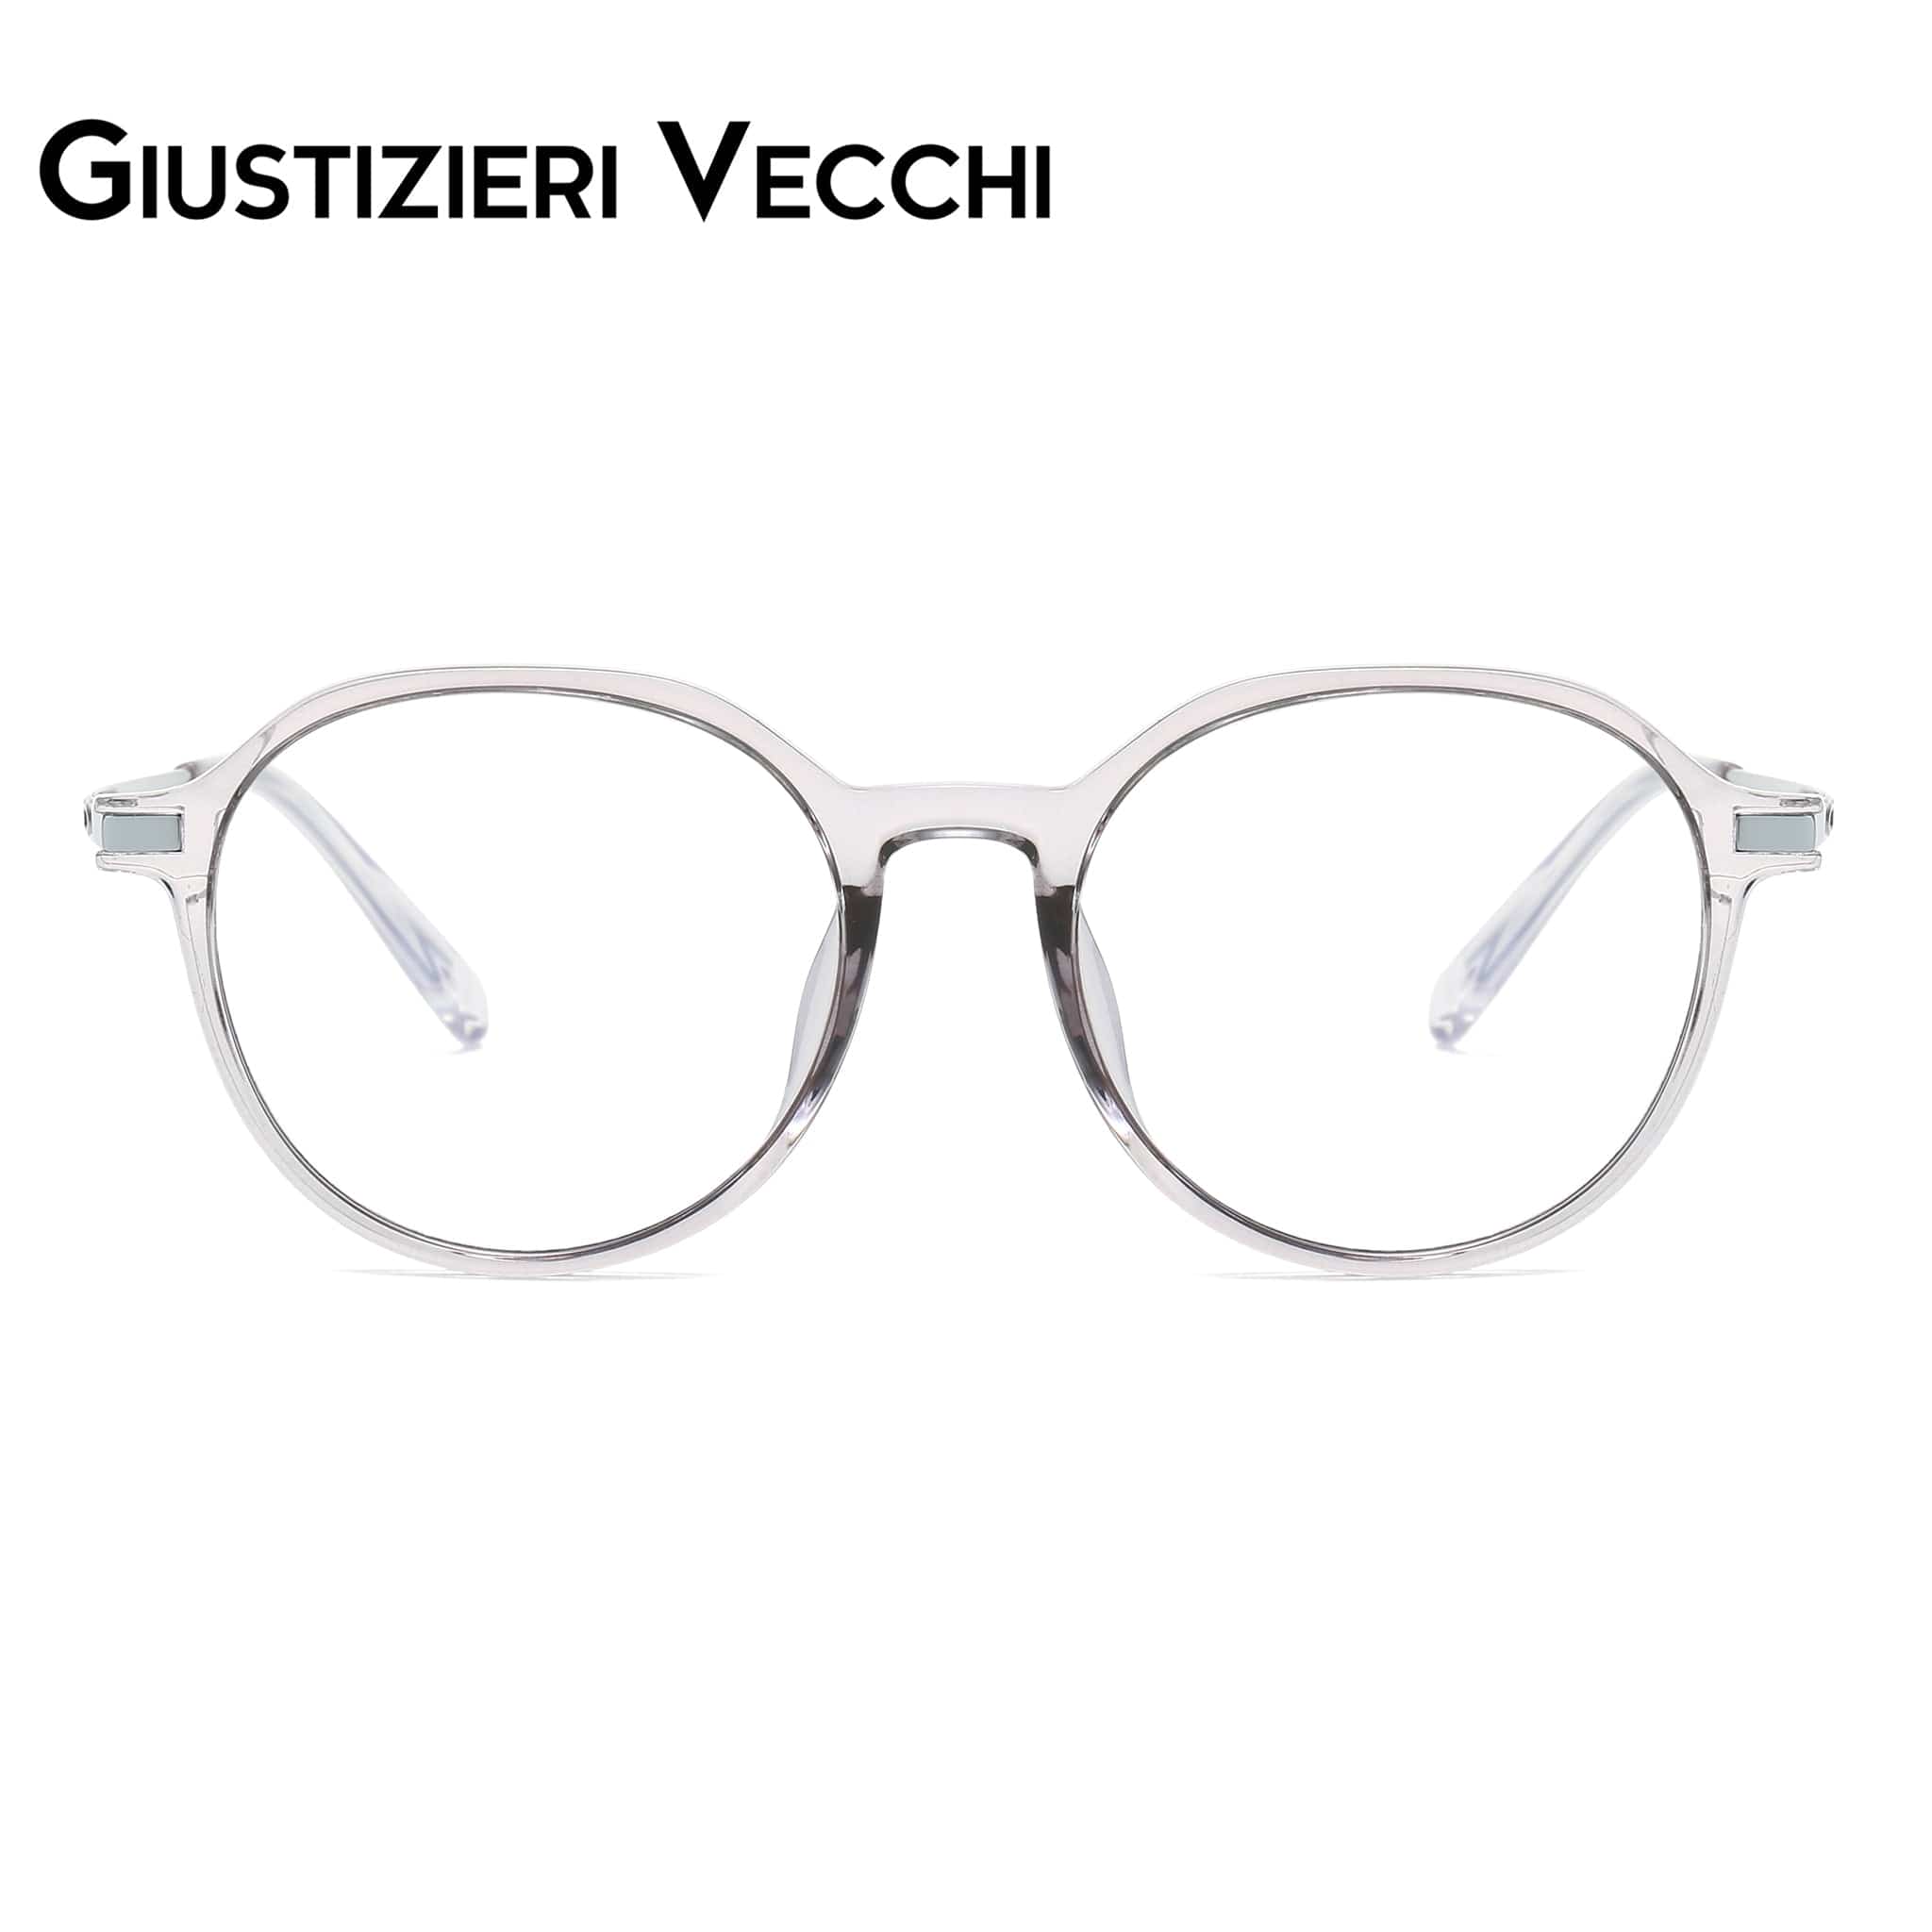 GIUSTIZIERI VECCHI Eyeglasses Small / Sea Glass Grey StarBurst Uno